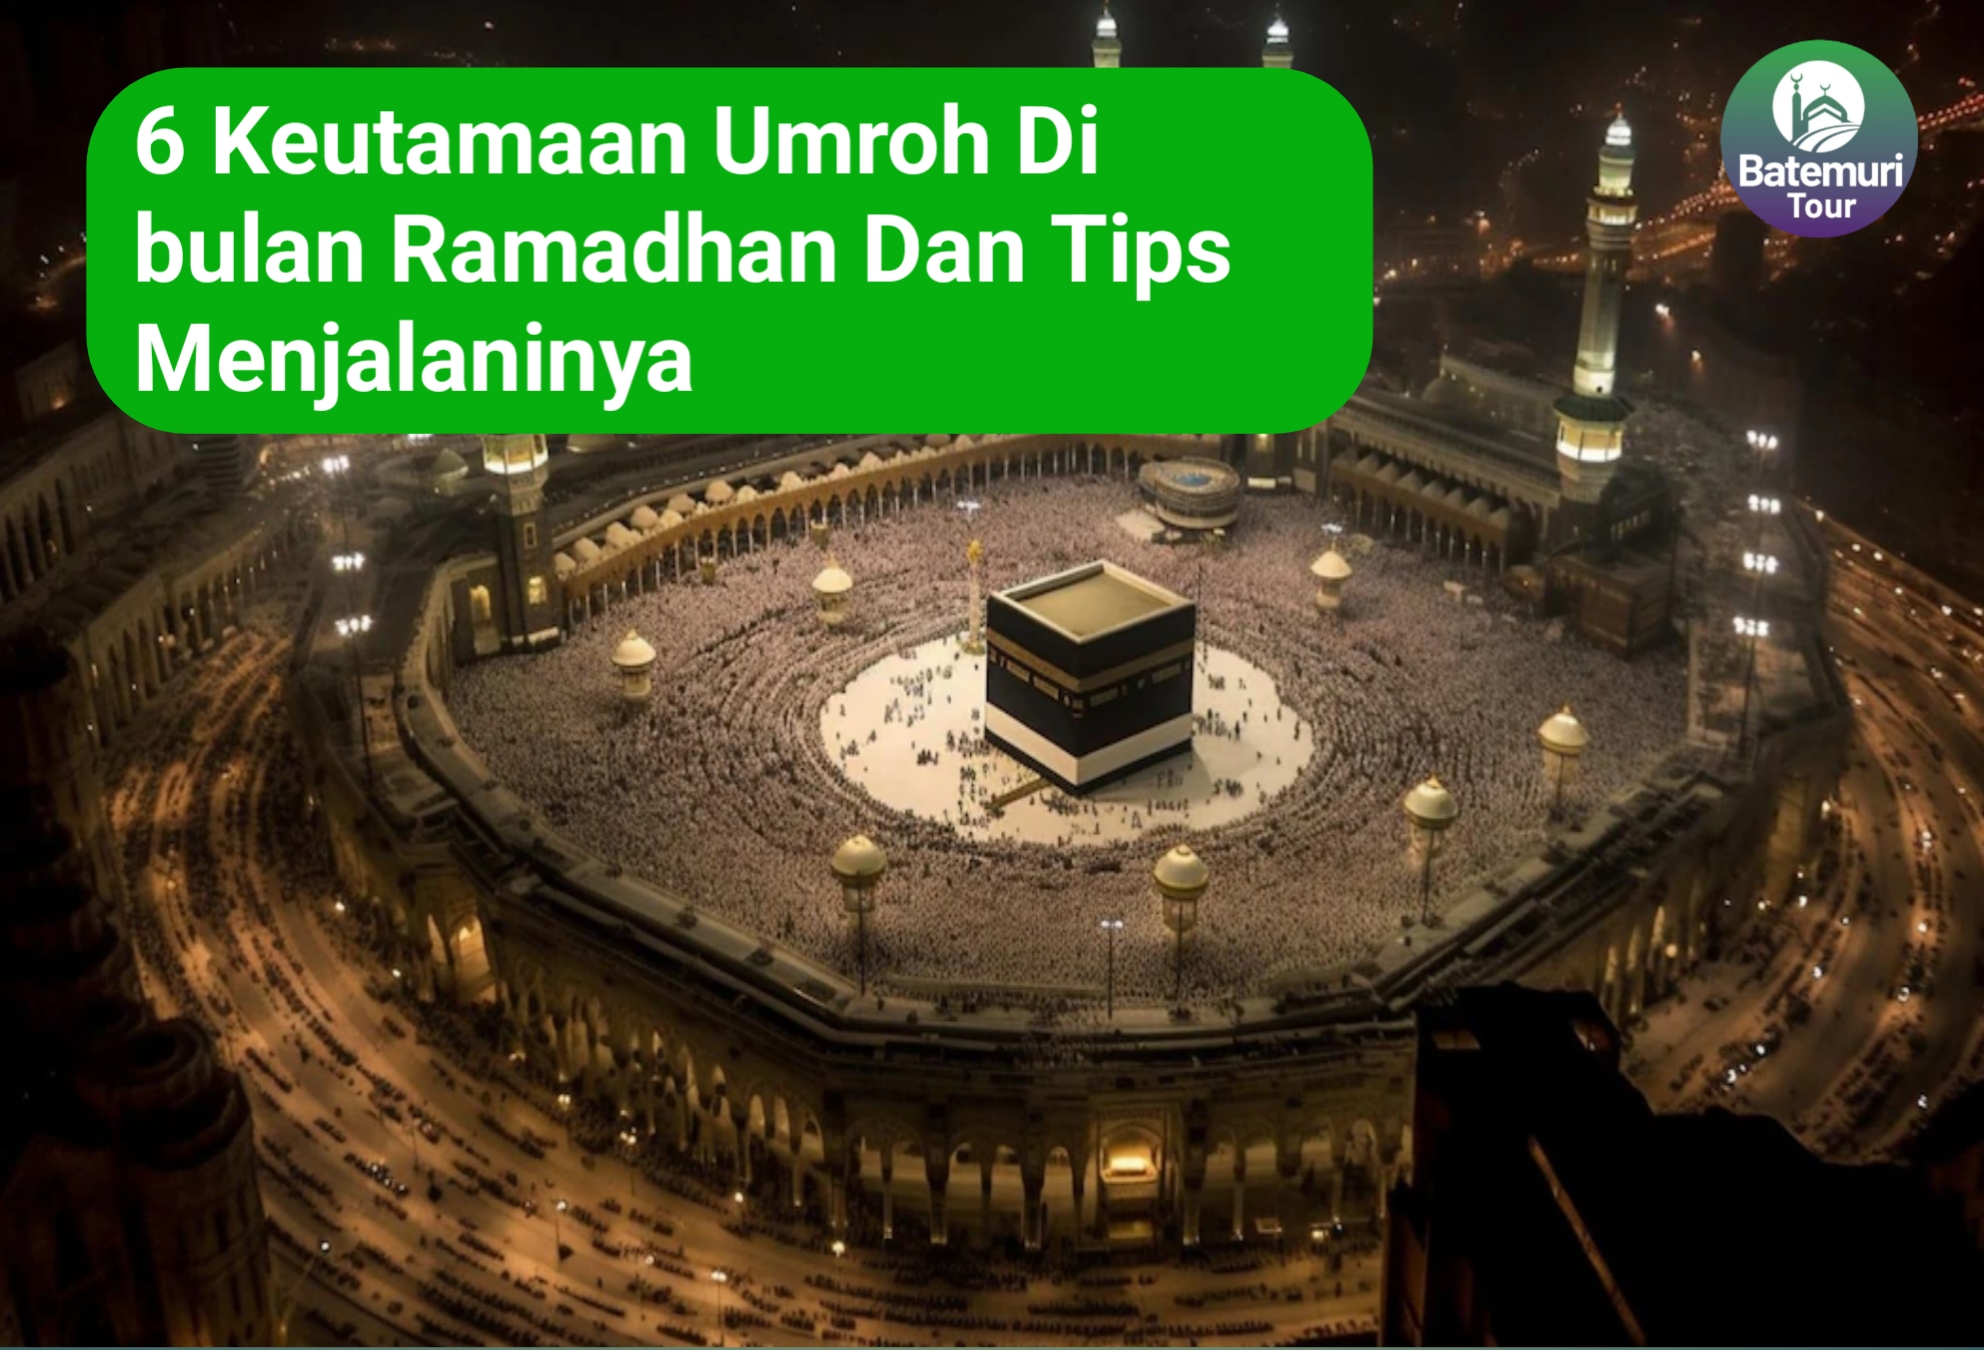  6 Keutamaan Umrah di Bulan Ramadan dan Tips Menjalaninya